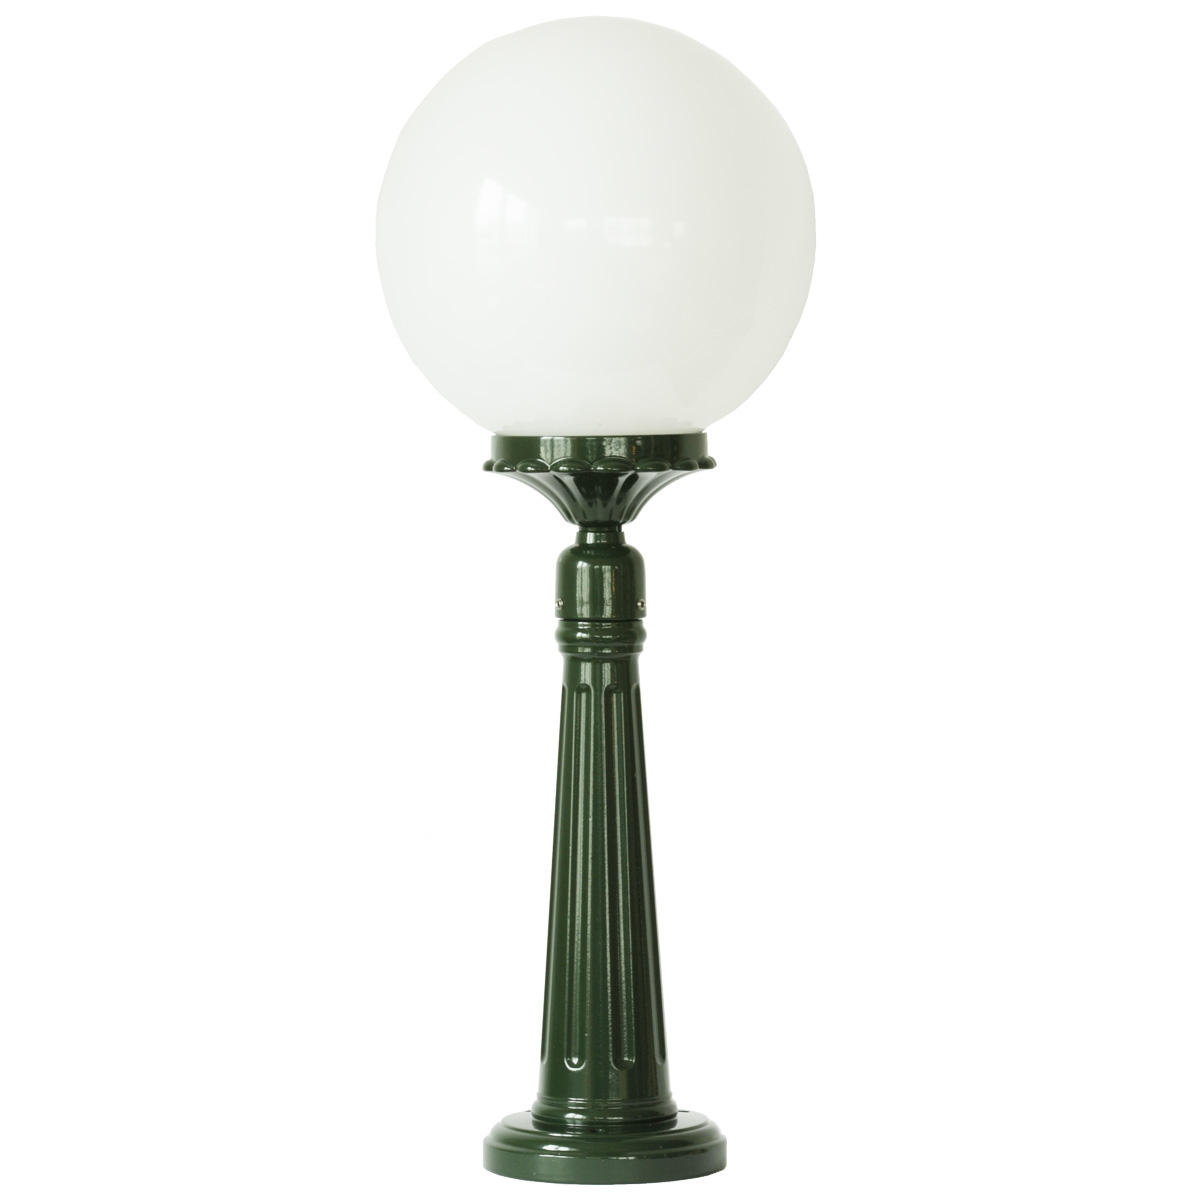 European Single Globe Lantern Patio Lamp White 